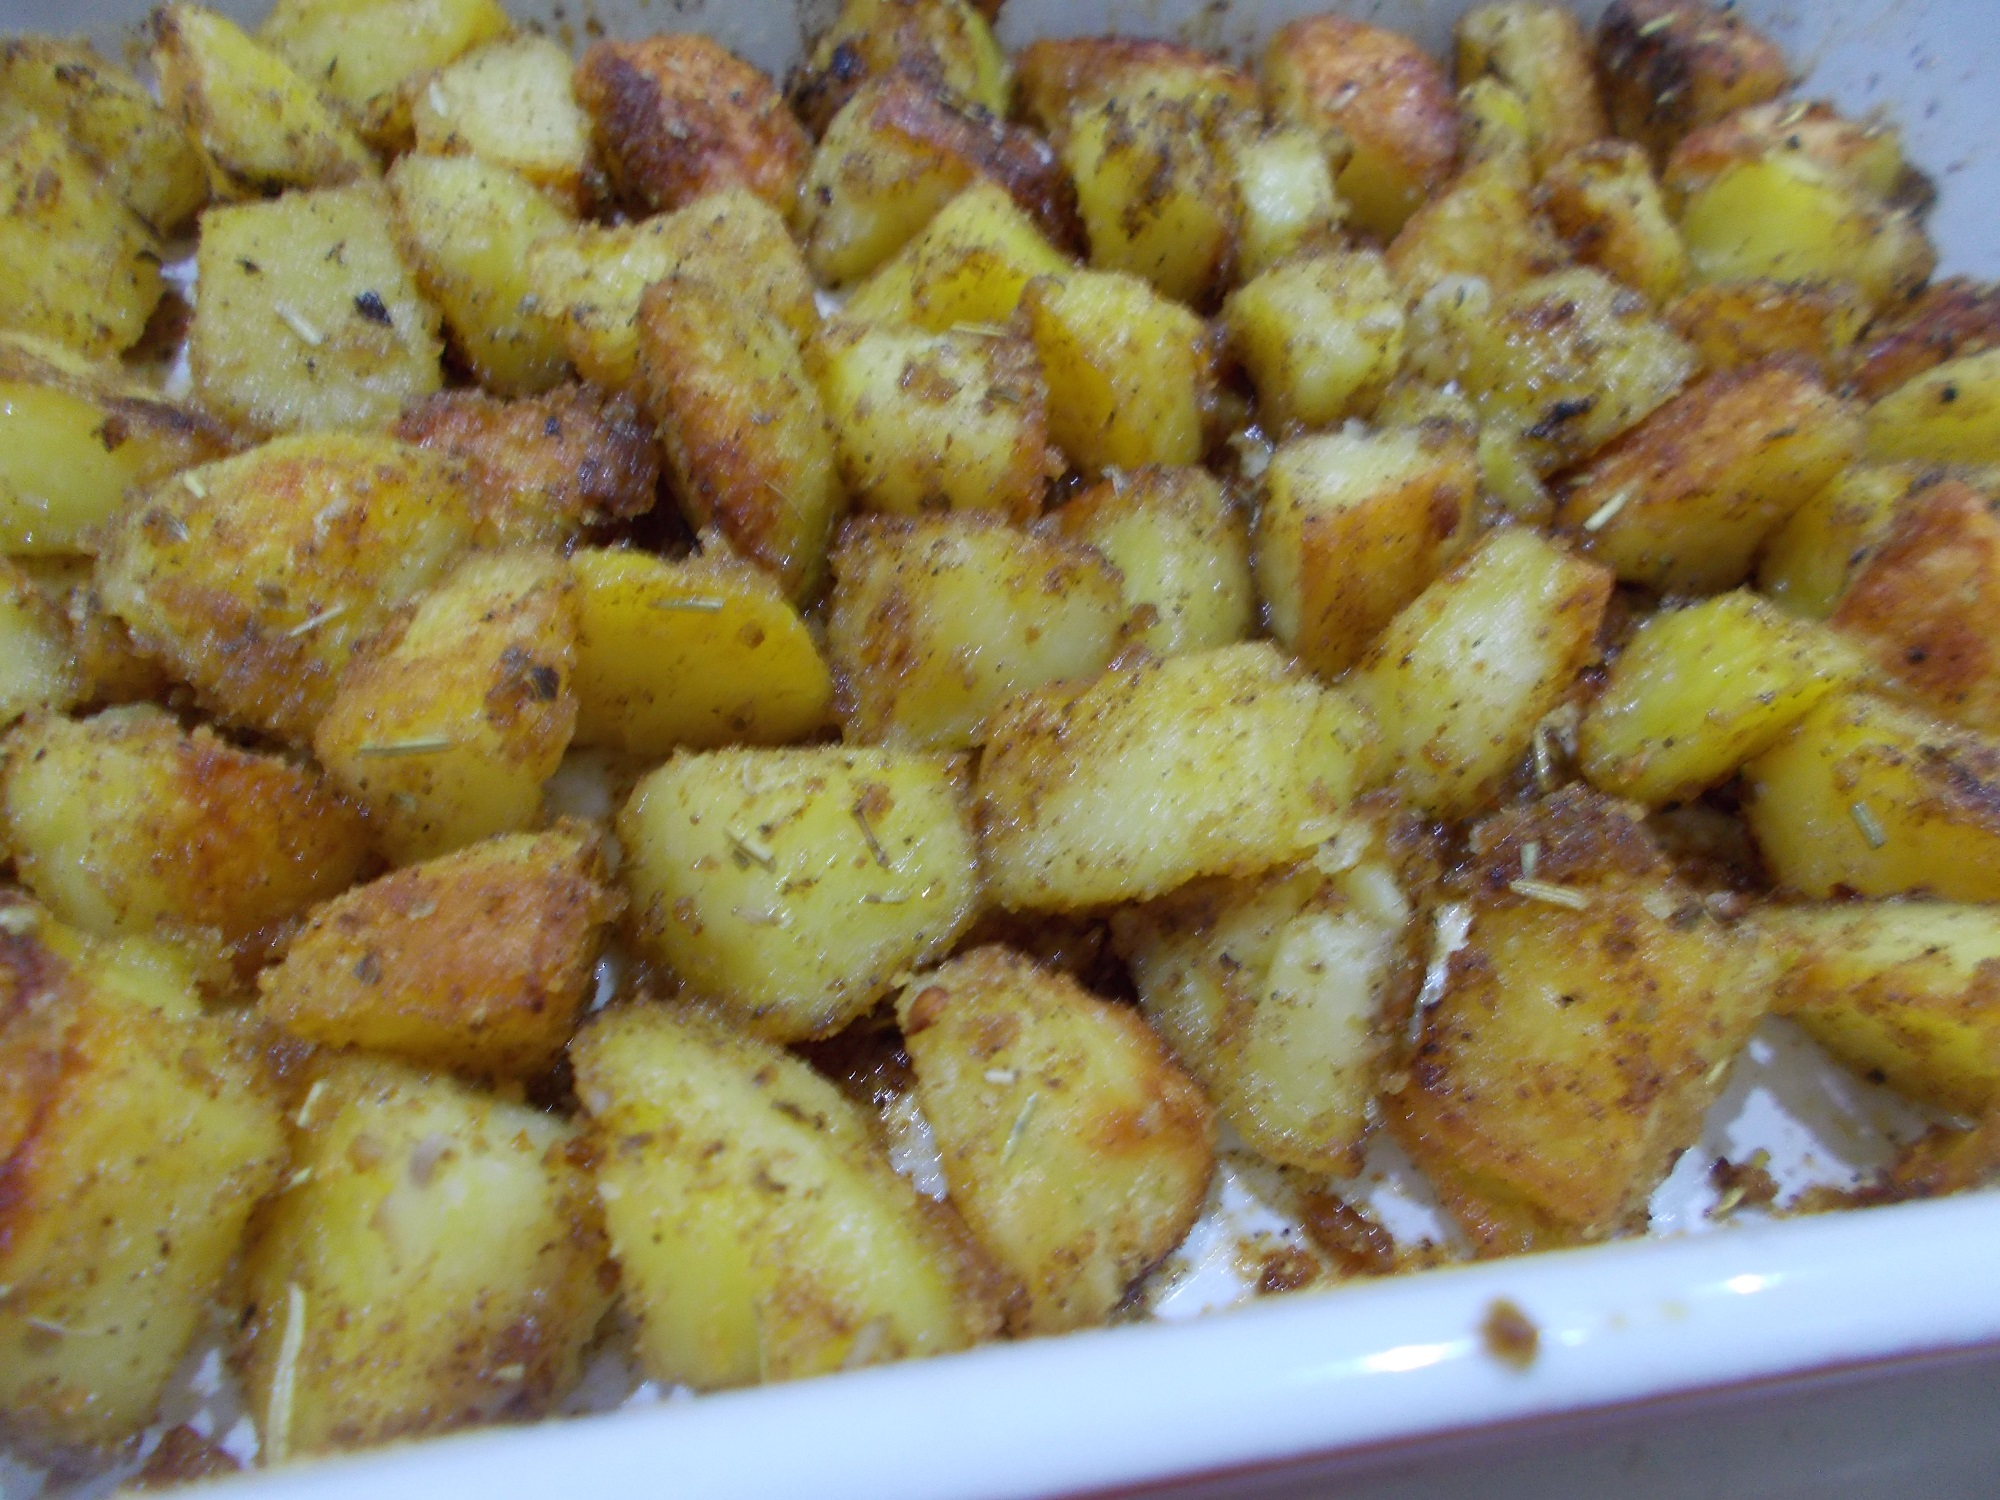 Cartofi crocanti la cuptor, cu salata de varza